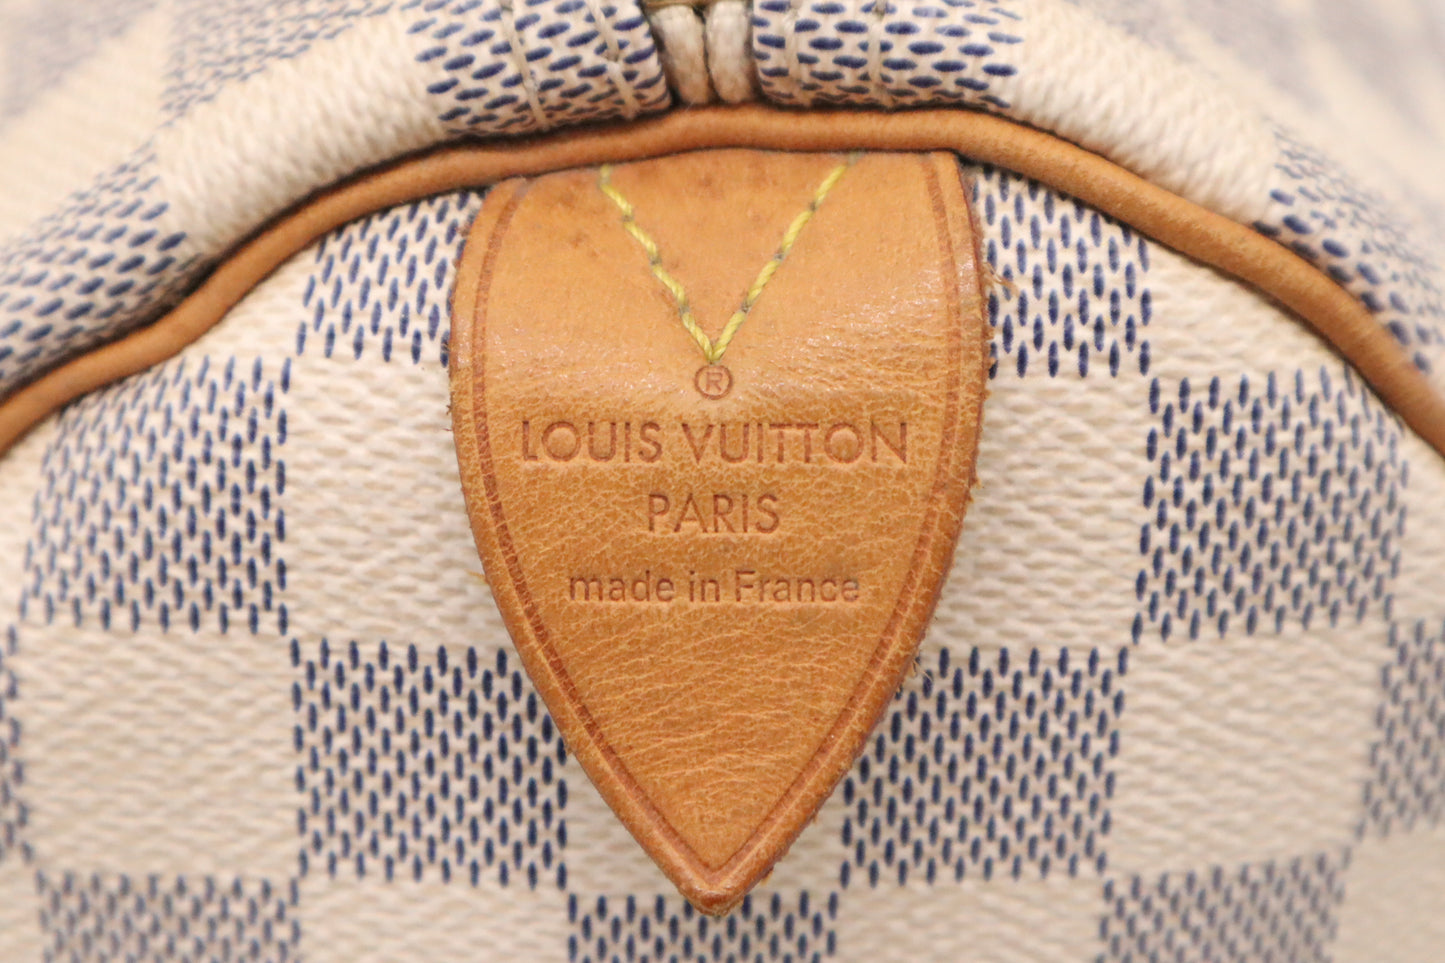 Louis Vuitton Speedy 30 in Damier Azur Canvas